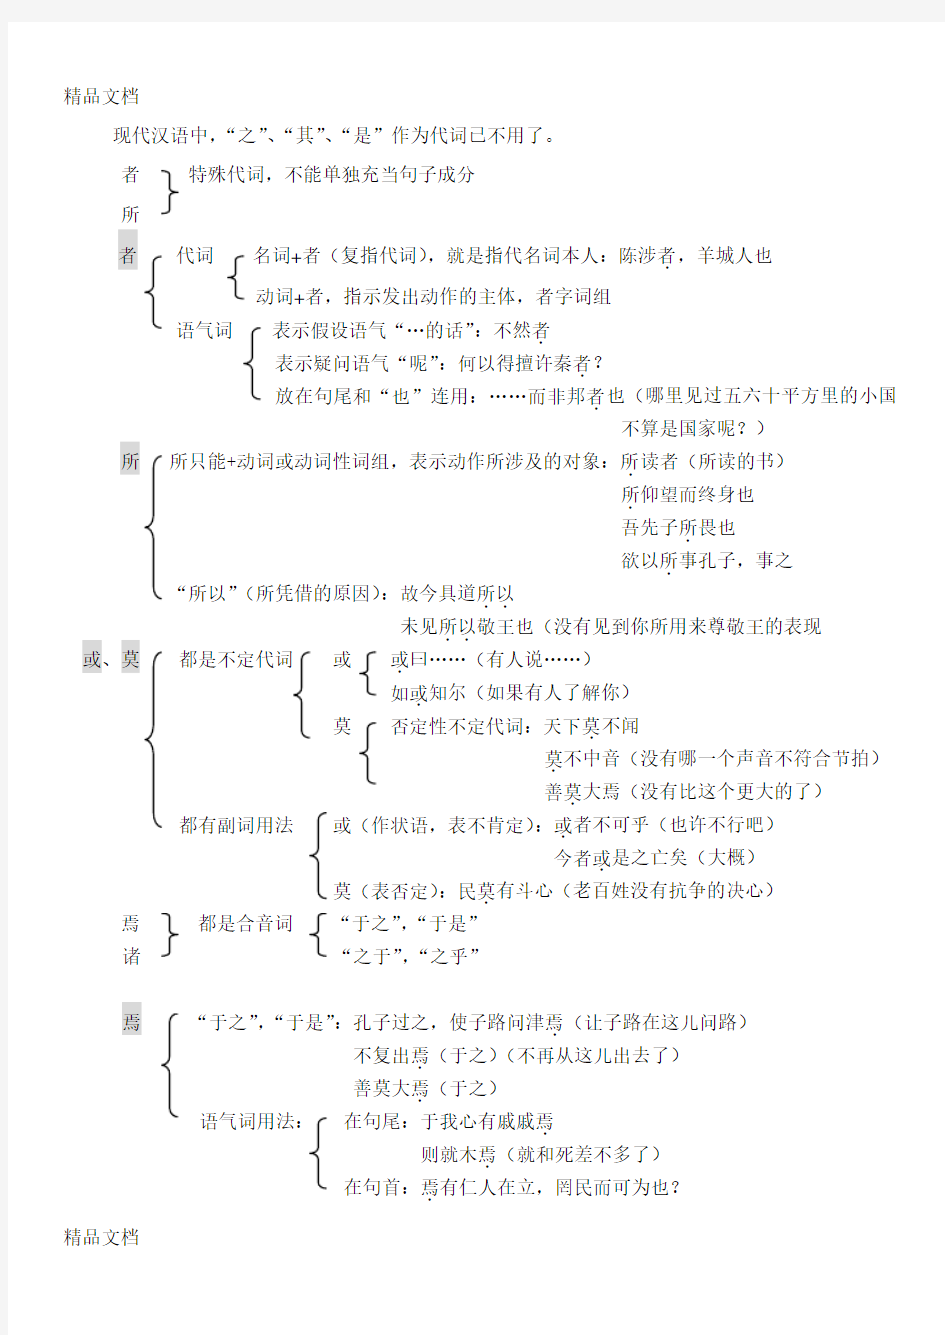 古代汉语虚词总结教学提纲